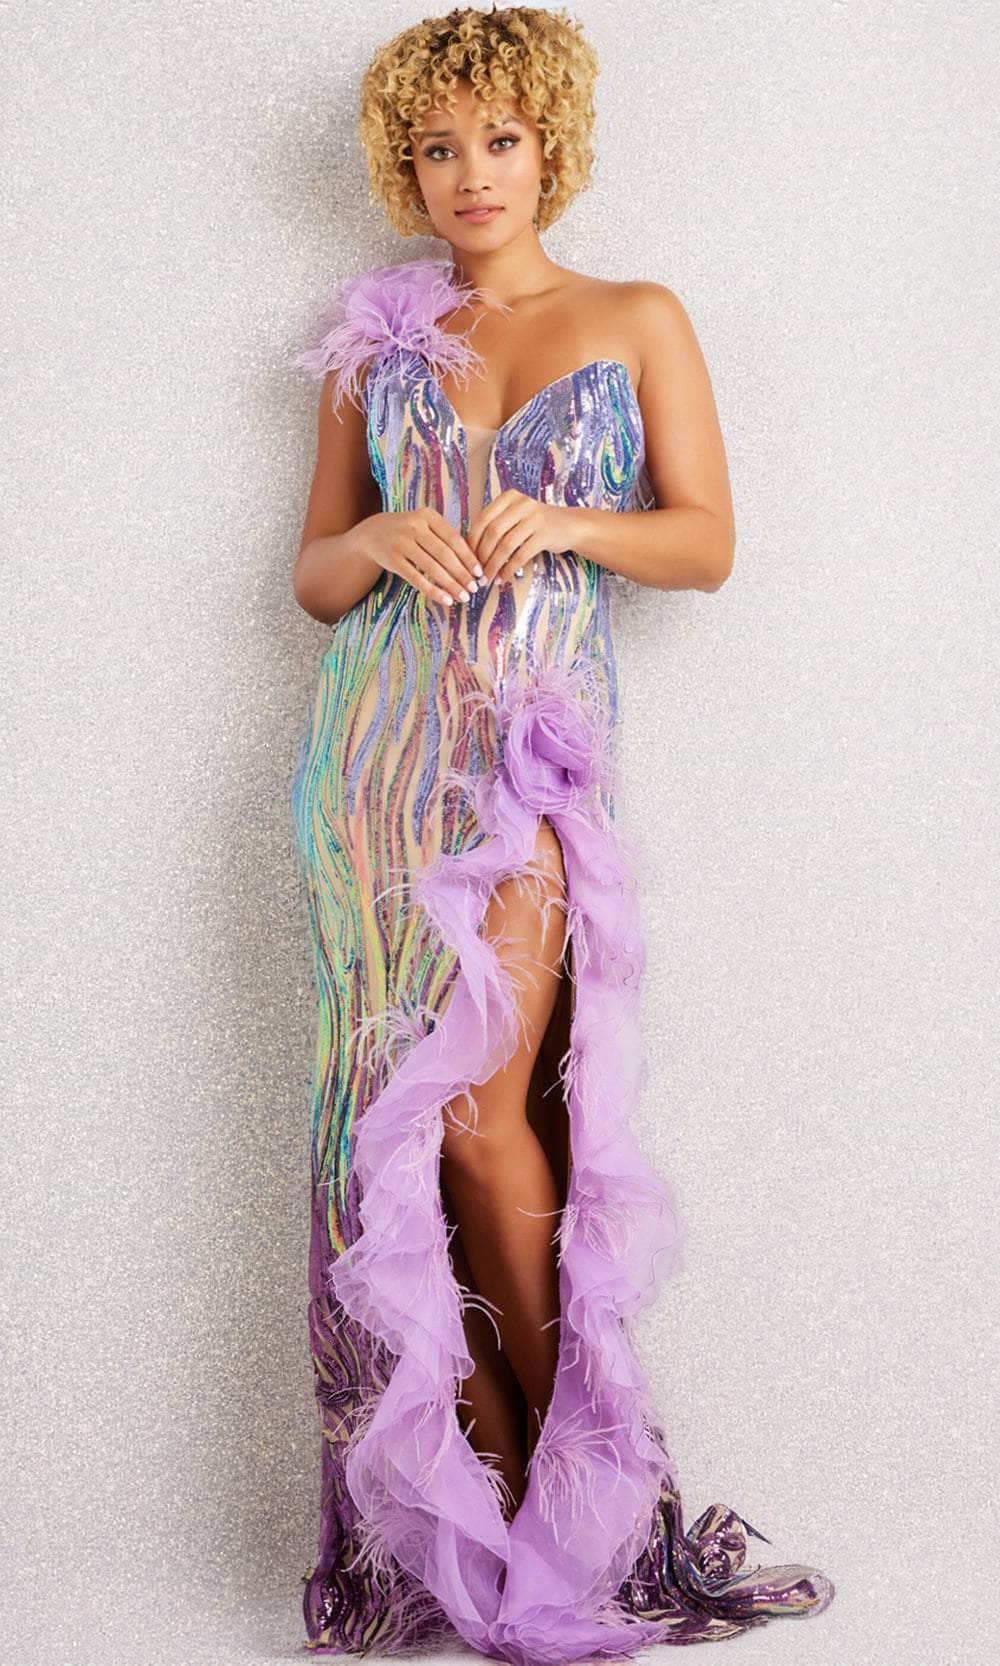 Jovani 38678 - Single Shoulder Sequin Embellished Dress Special Occasion Dress 00 / Lilac/Purple